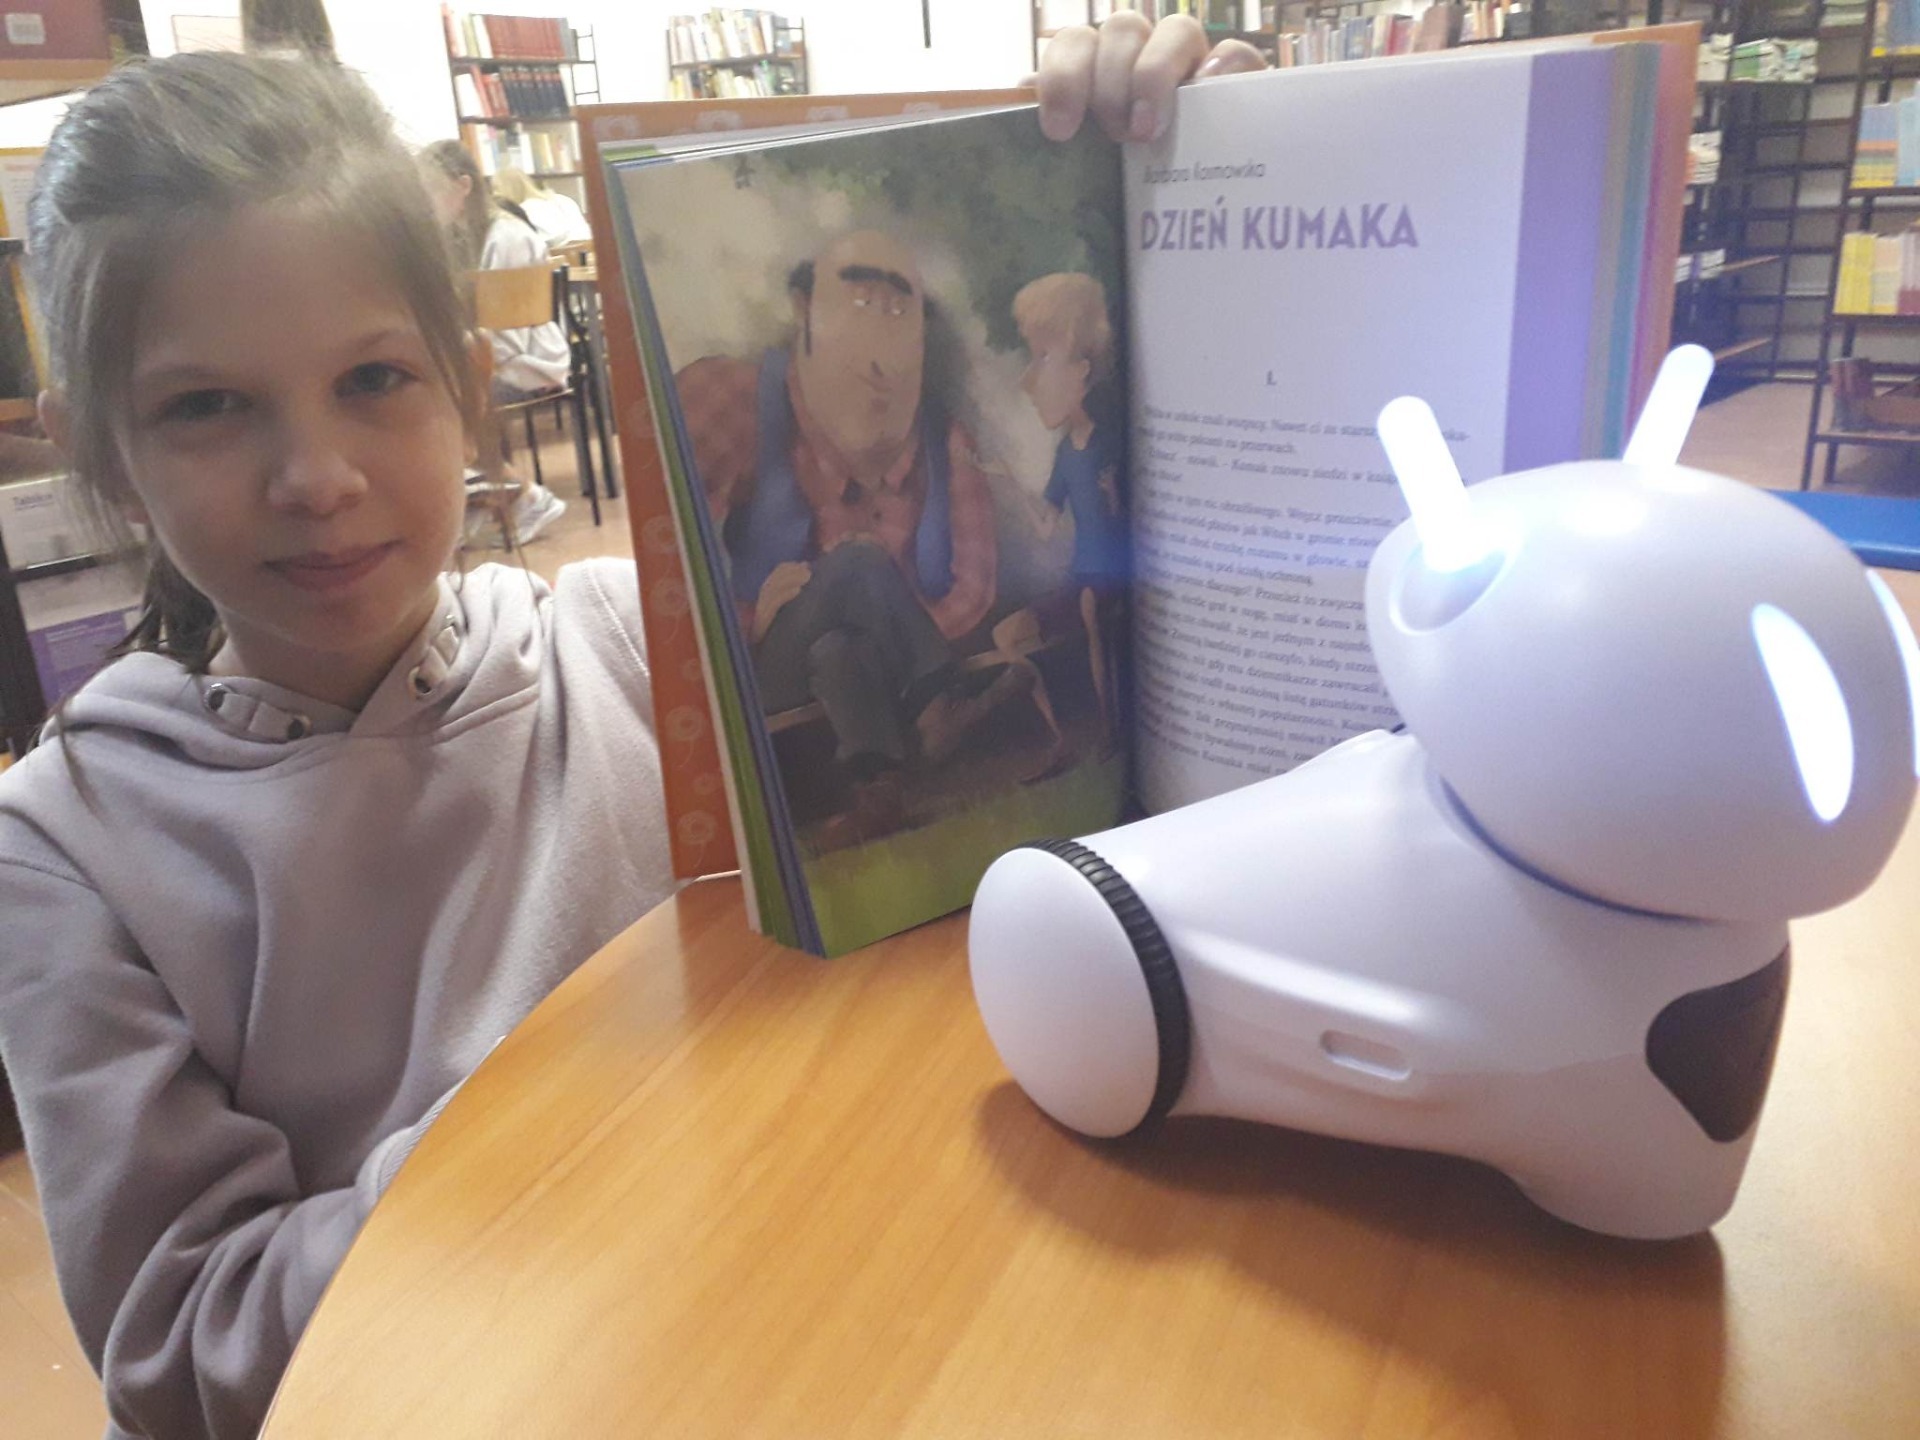 Ola Soska z książką z opowiadaniem "Dzień Kumaka" oraz z robotem Photon